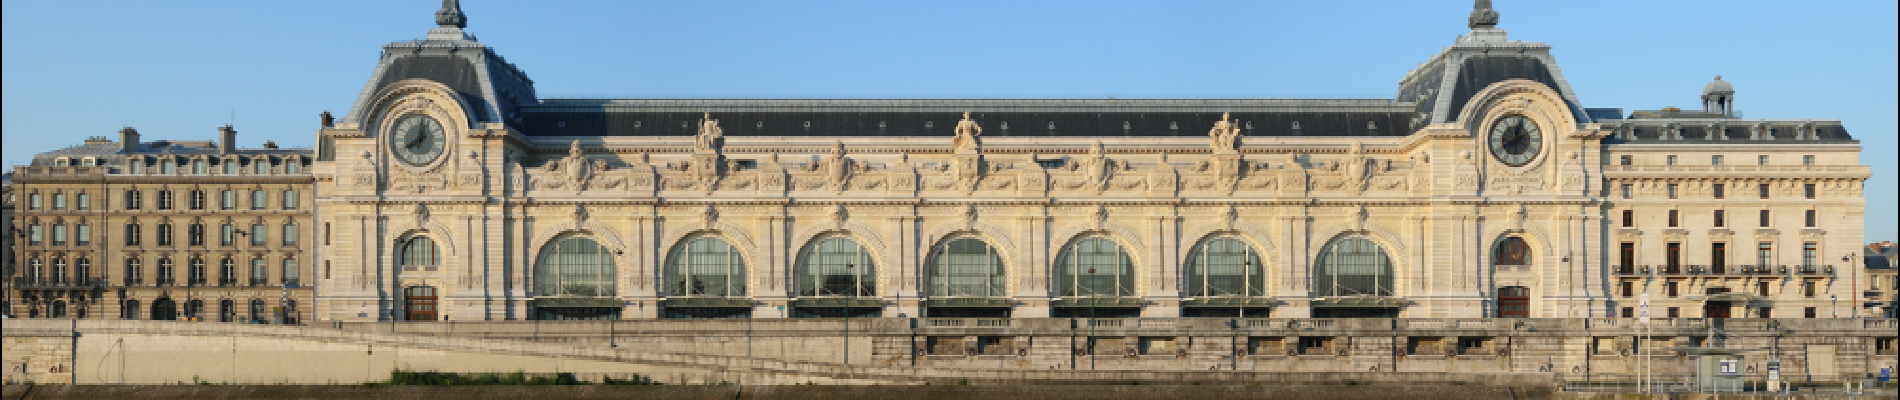 Point of interest Paris - Musée d'Orsay - Photo